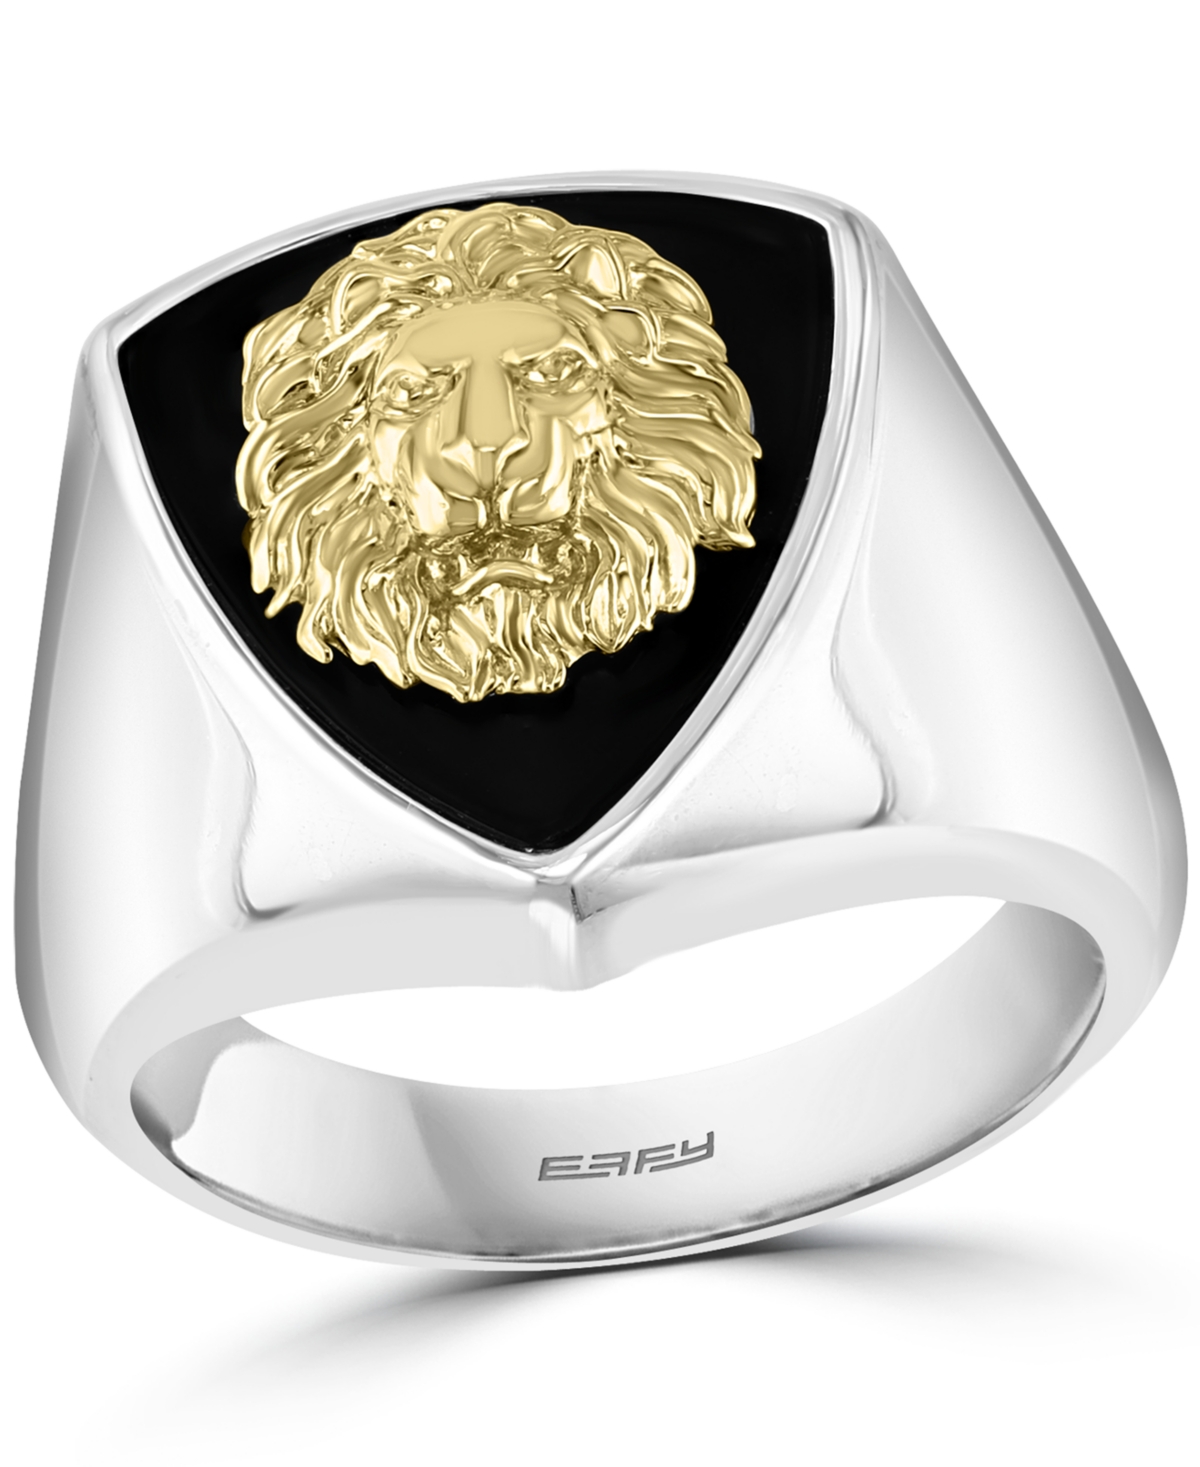 Effy Men's Lion Head Statement Ring in Sterling Silver & 18k Gold-Plated Sterling Silver - Silver